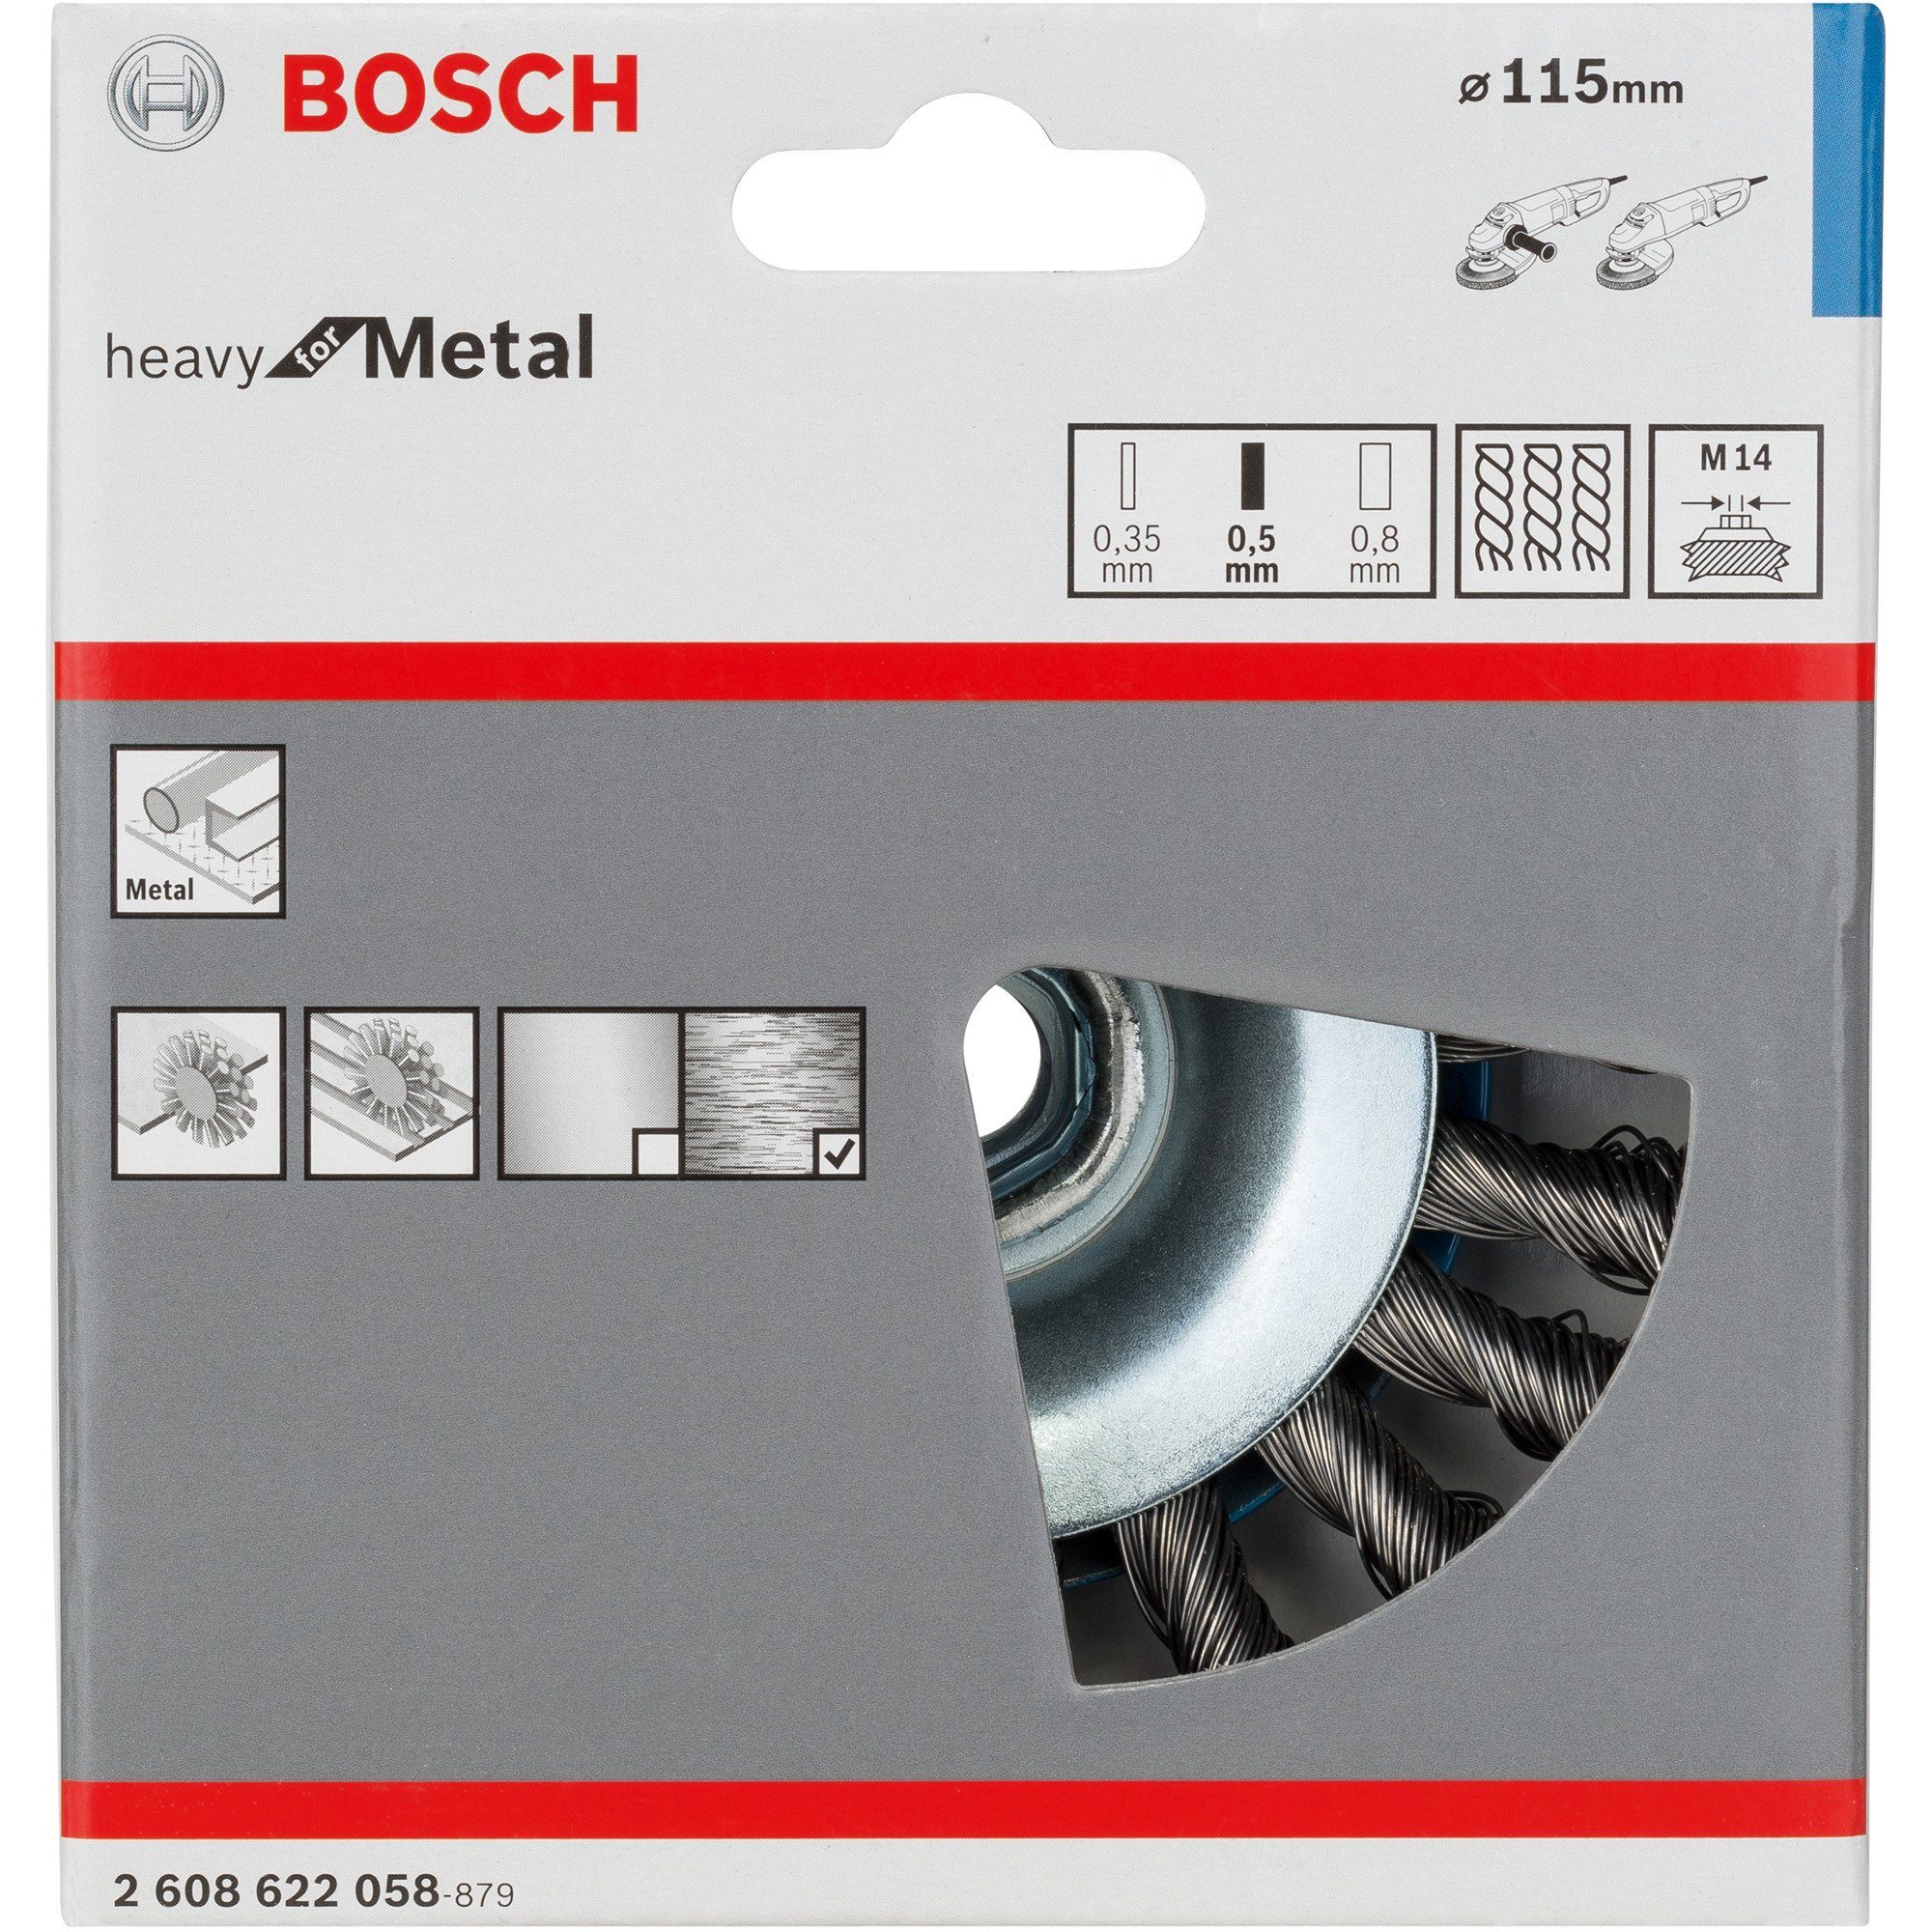 BOSCH Schleifscheibe Bosch Kegelbürste Metal, for Heavy Professional Ø